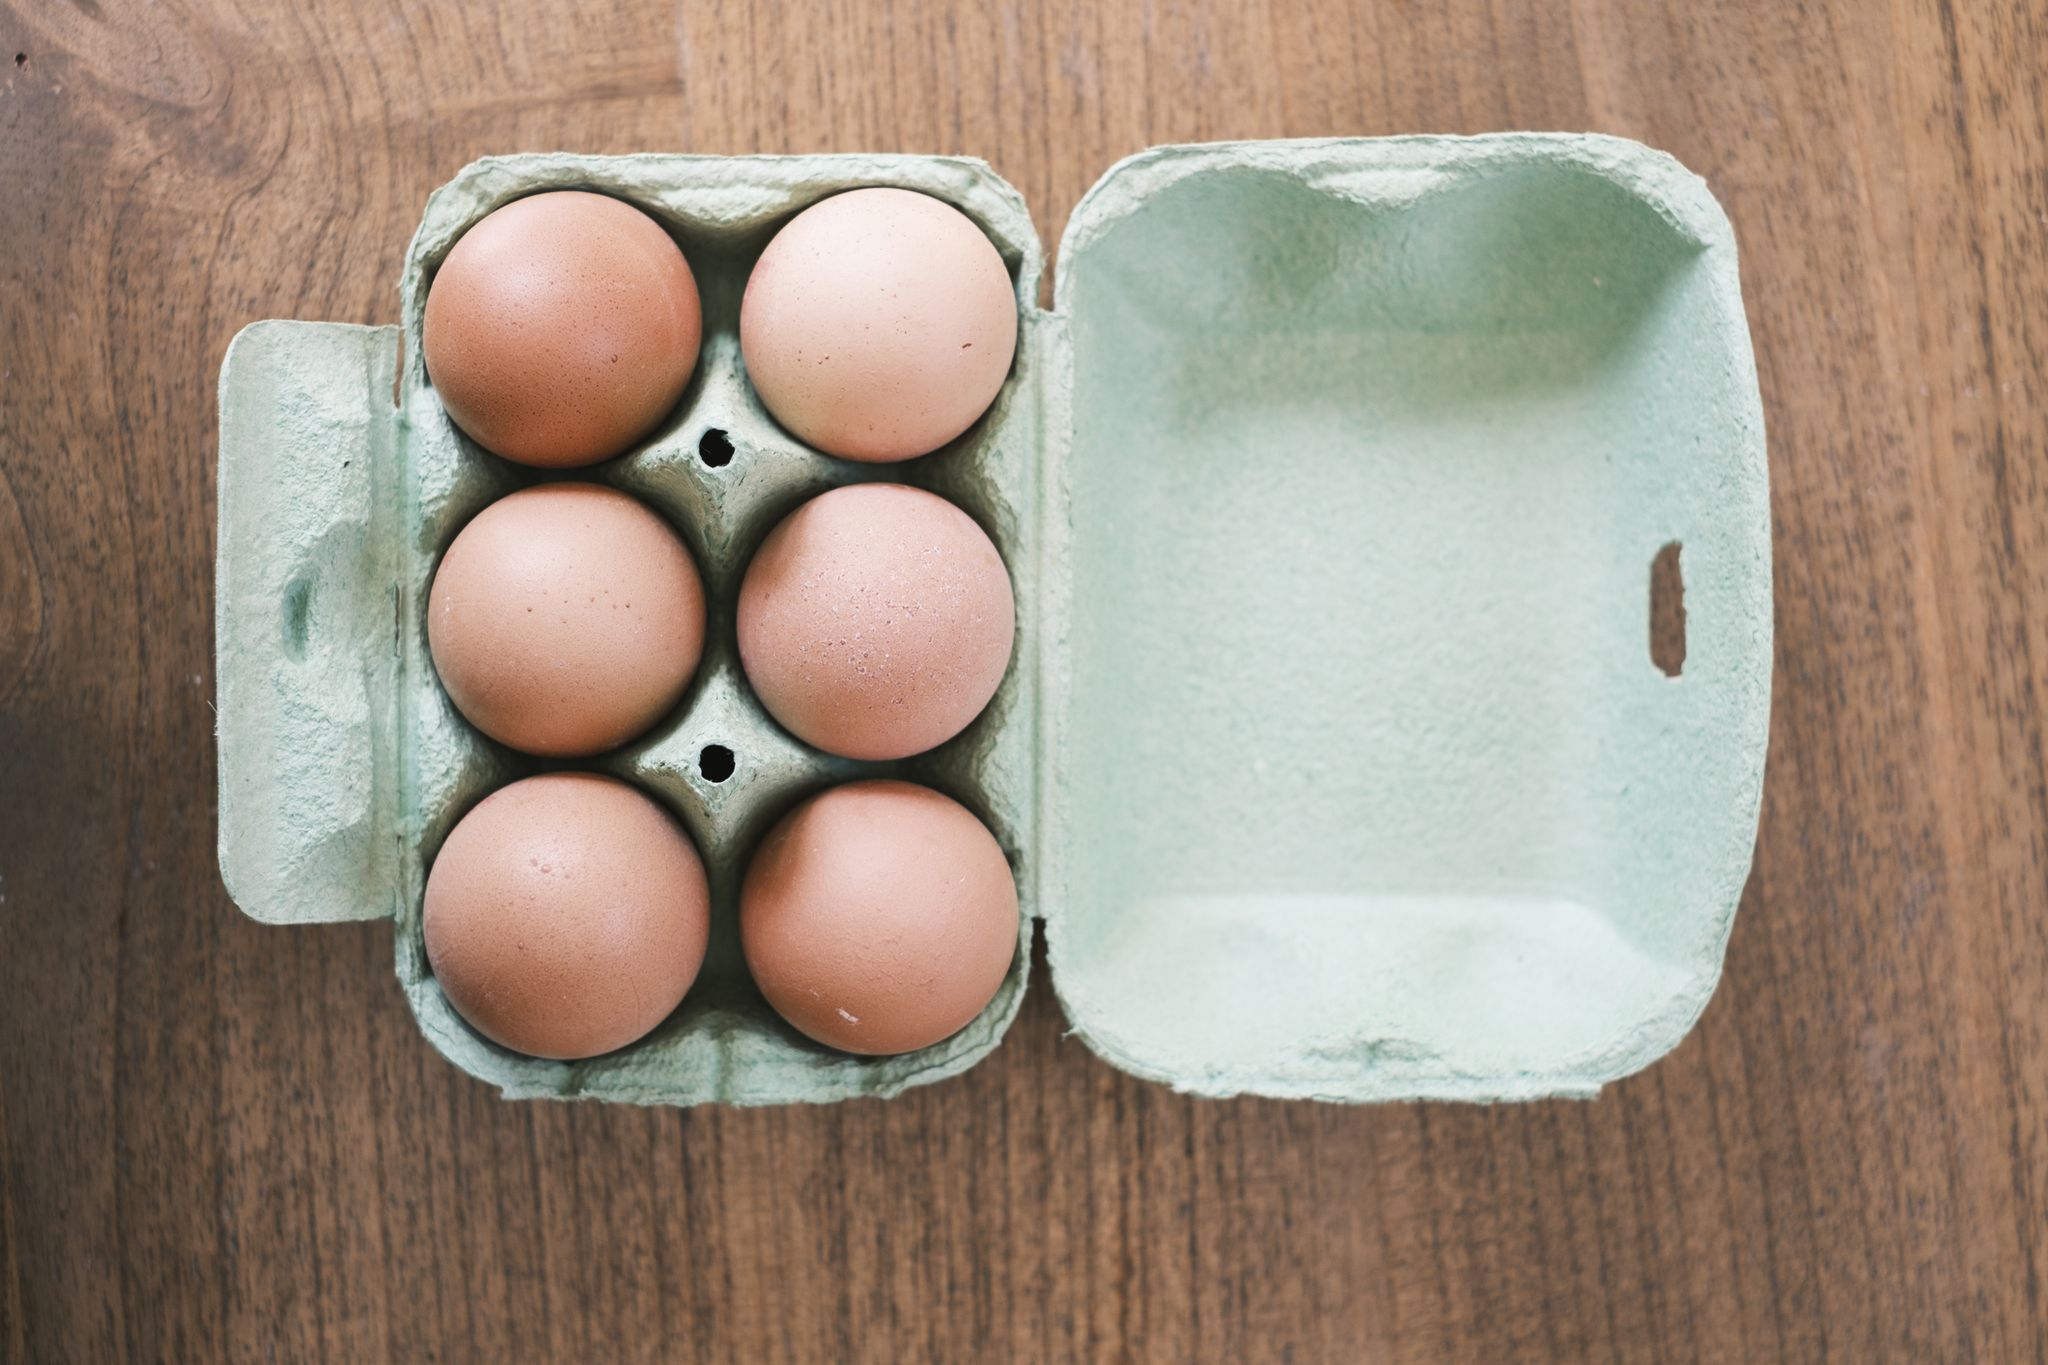 Dónde los huevos en casa: ¿dentro o fuera de la nevera?